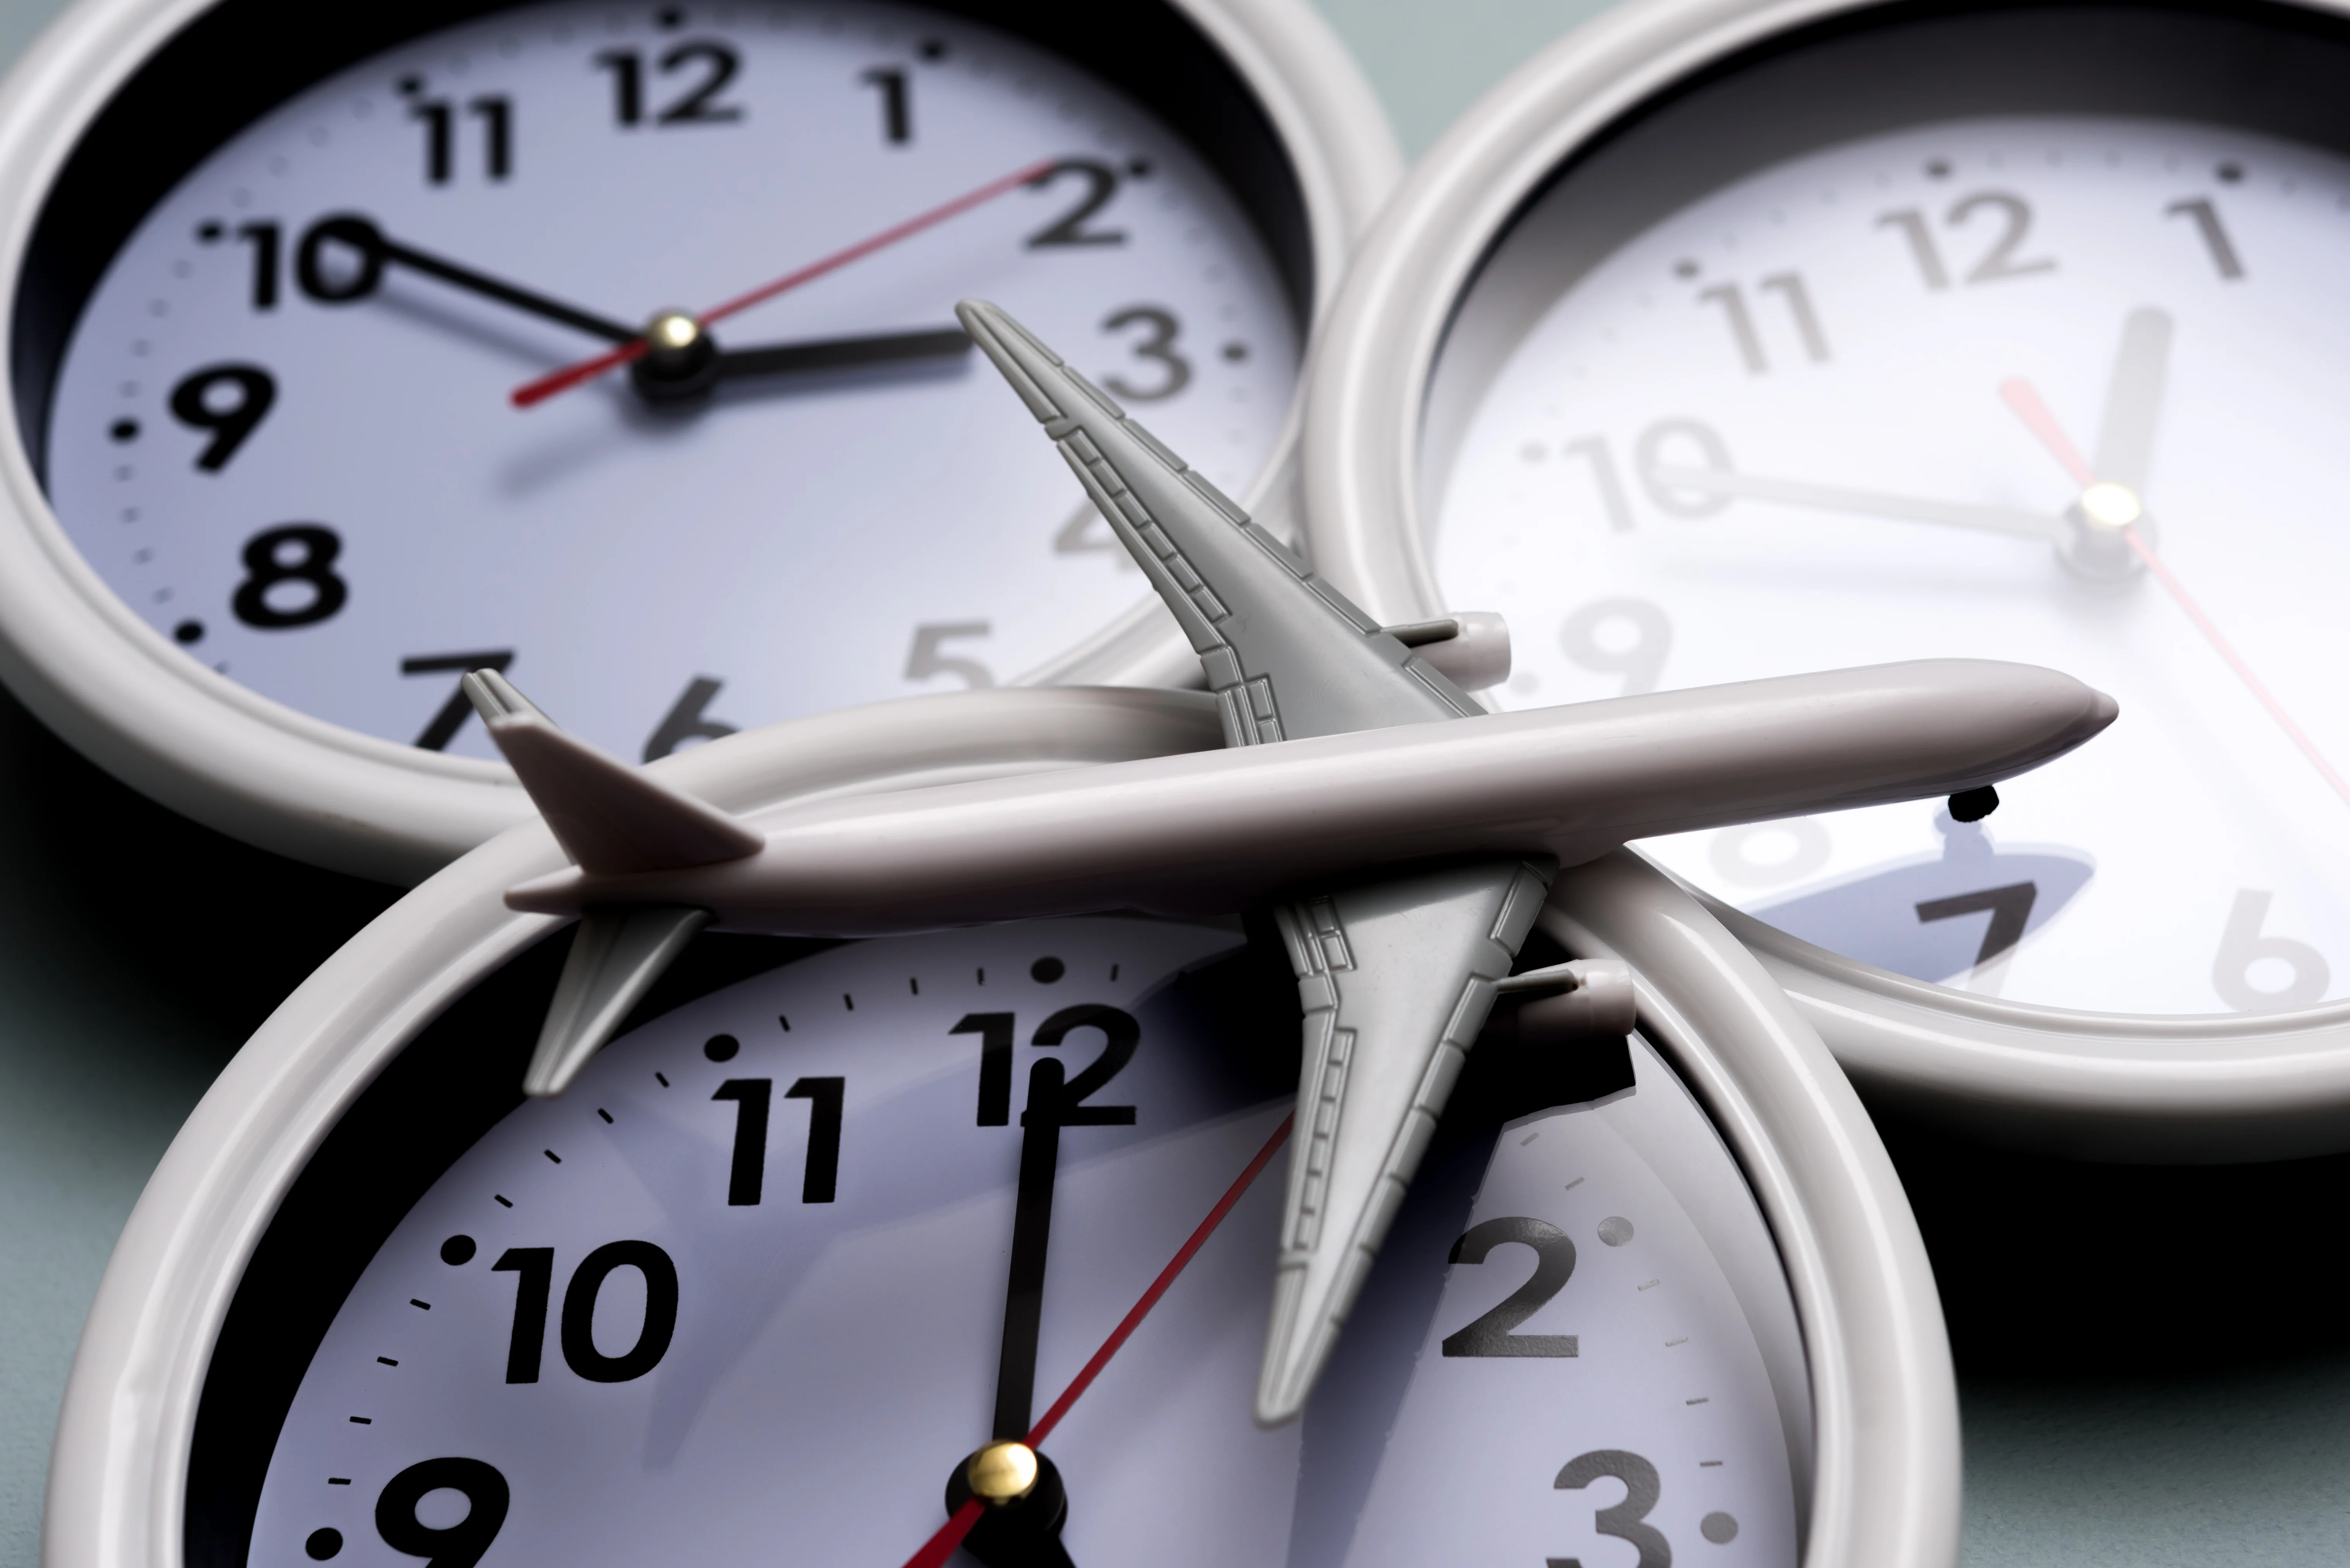 飛行機の模型と時計